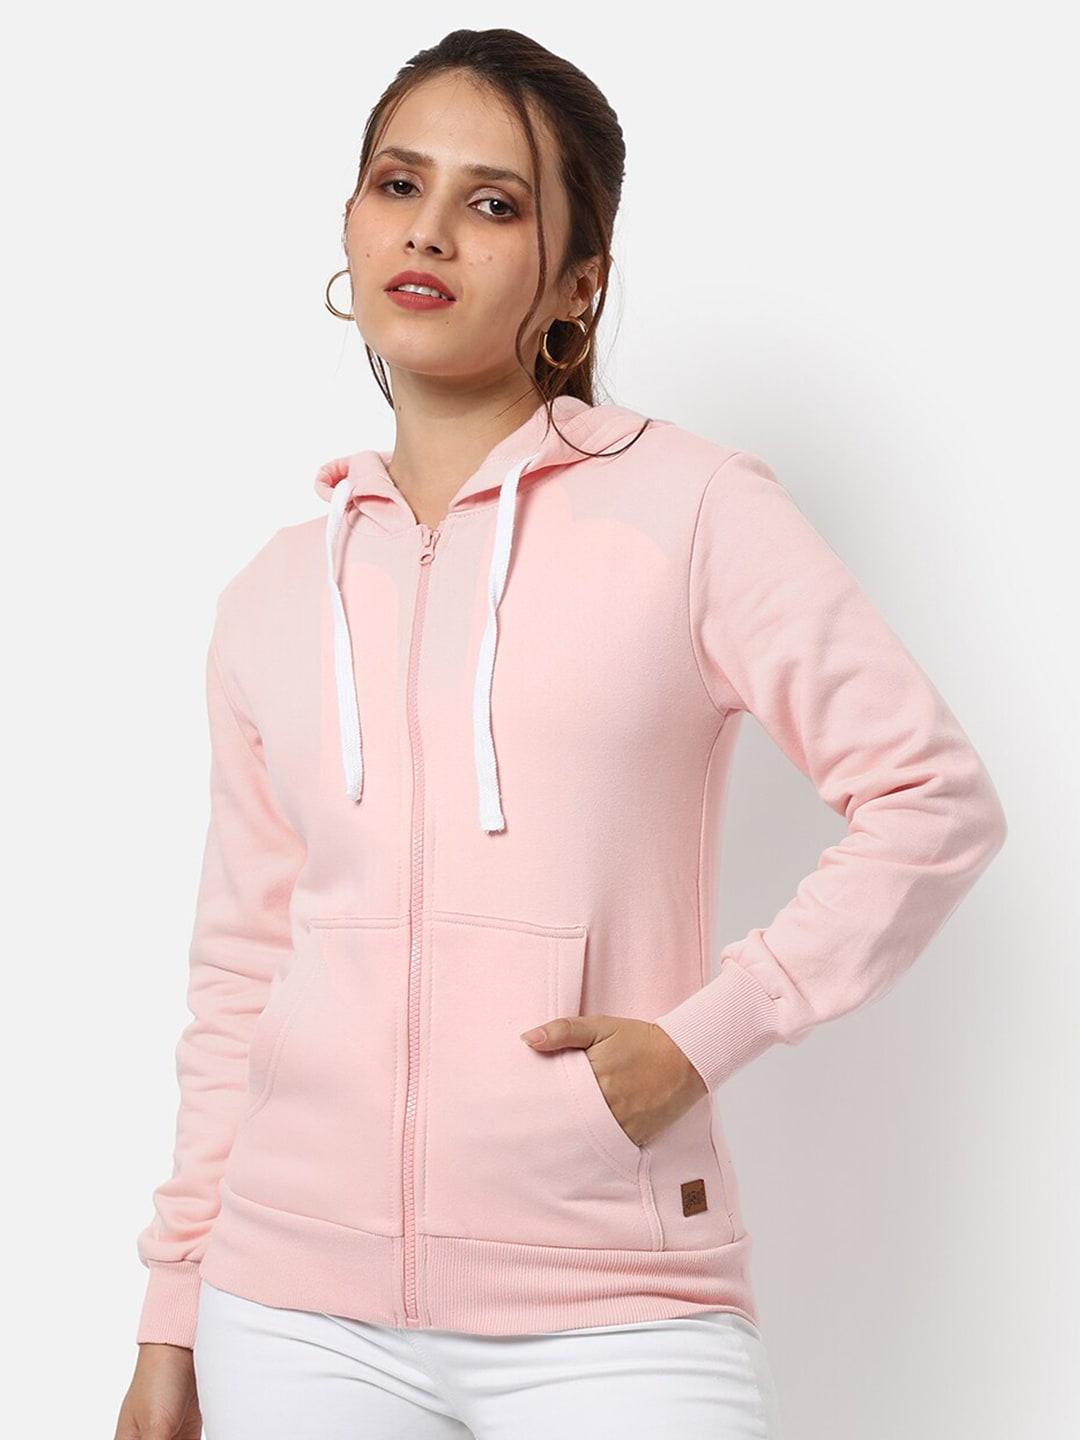 campus-sutra-women-pink-hooded-cotton-sweatshirt